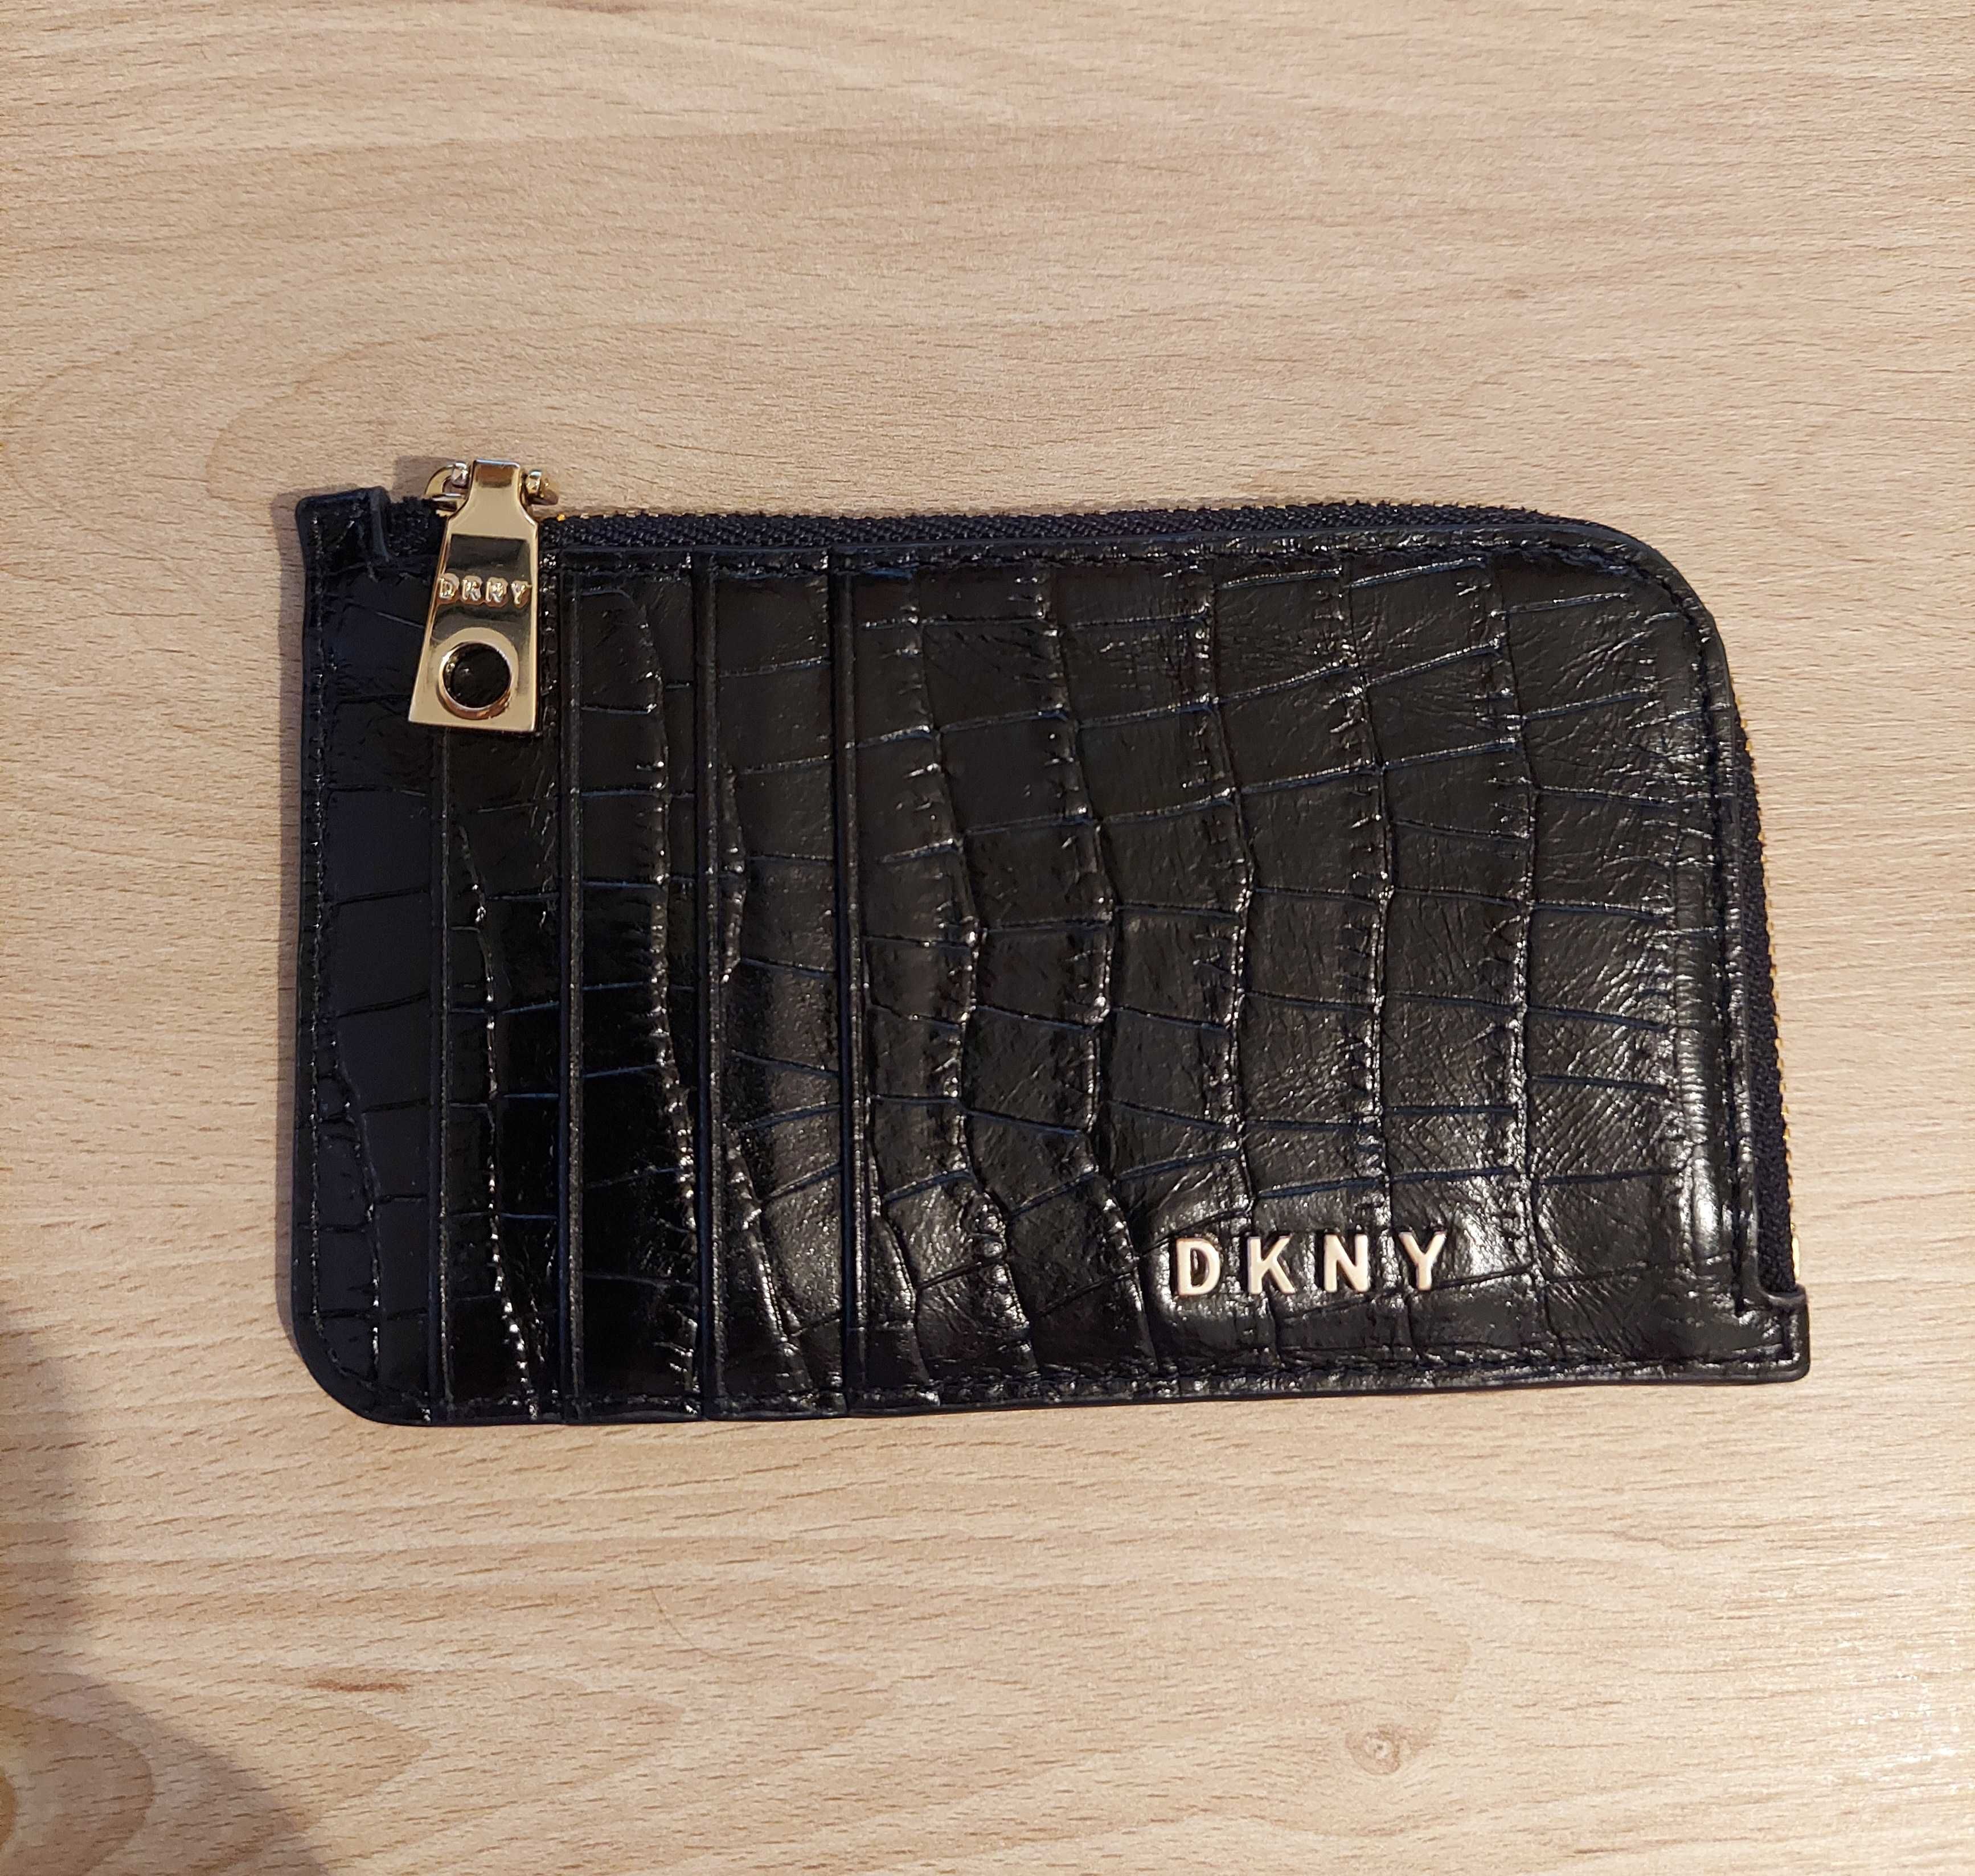 DKNY card holder - mały portfel na karty